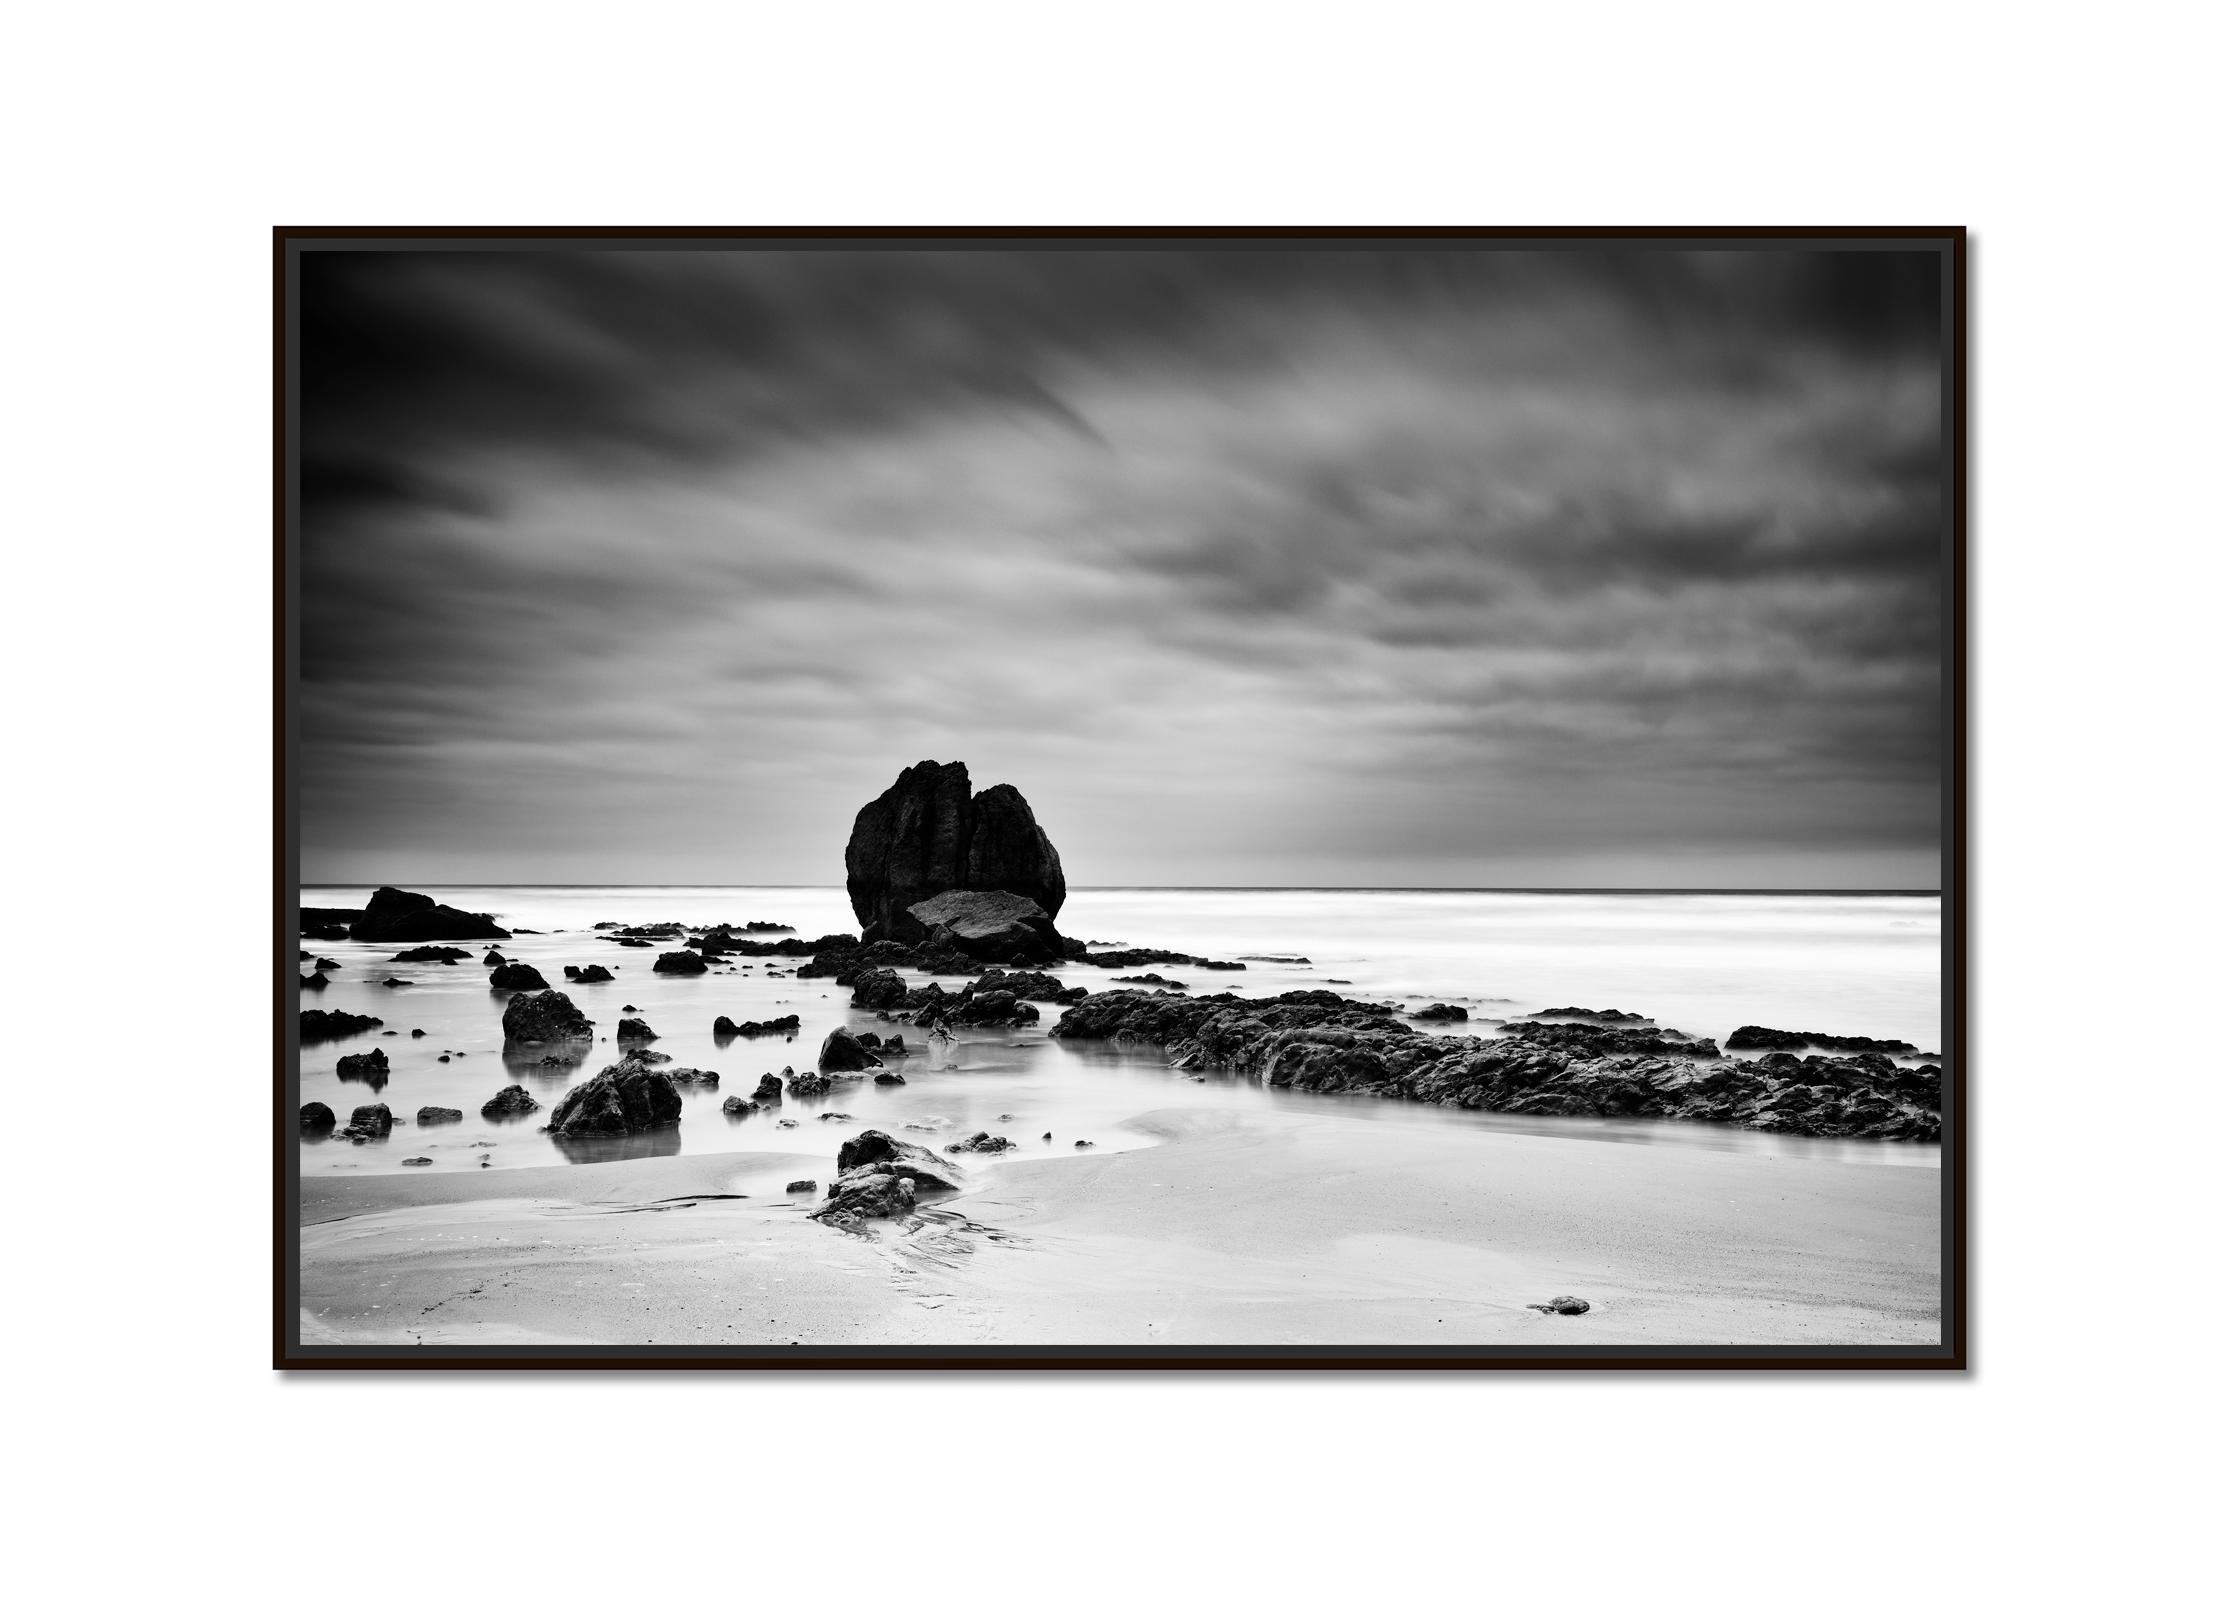 Rochers sur le SHORE, plage, Côte Atlantique, France, paysage en noir et blanc  - Photograph de Gerald Berghammer